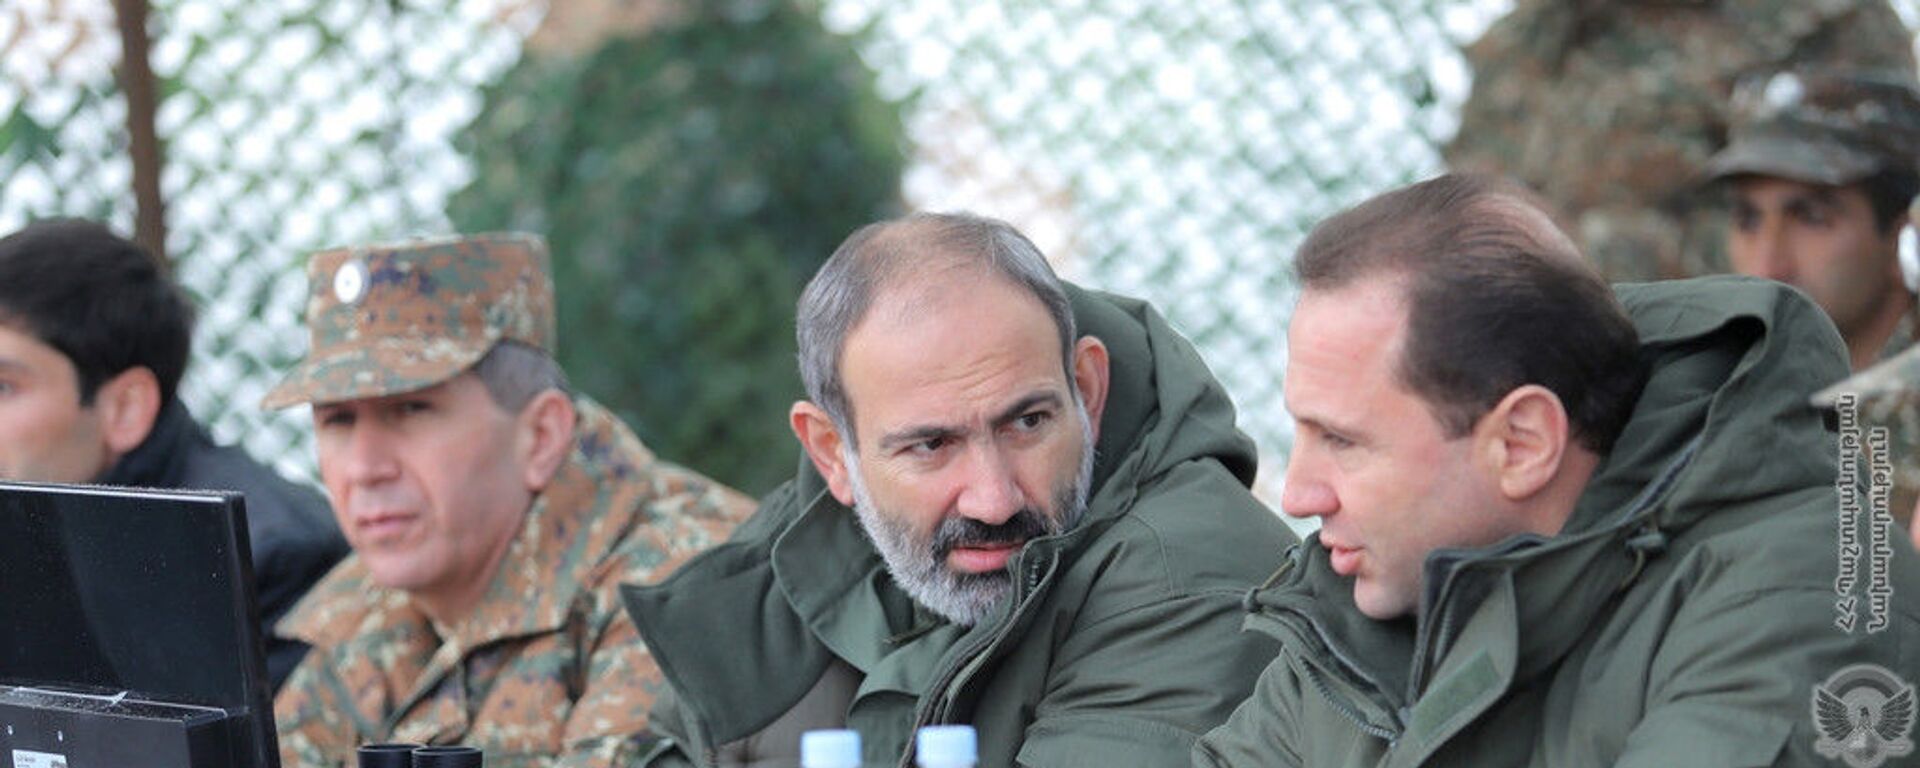 И.о. премьер-министра Никол Пашинян посетил боевую позицию одной из войсковой части (16 ноября 2018). Армения - Sputnik Армения, 1920, 15.04.2021